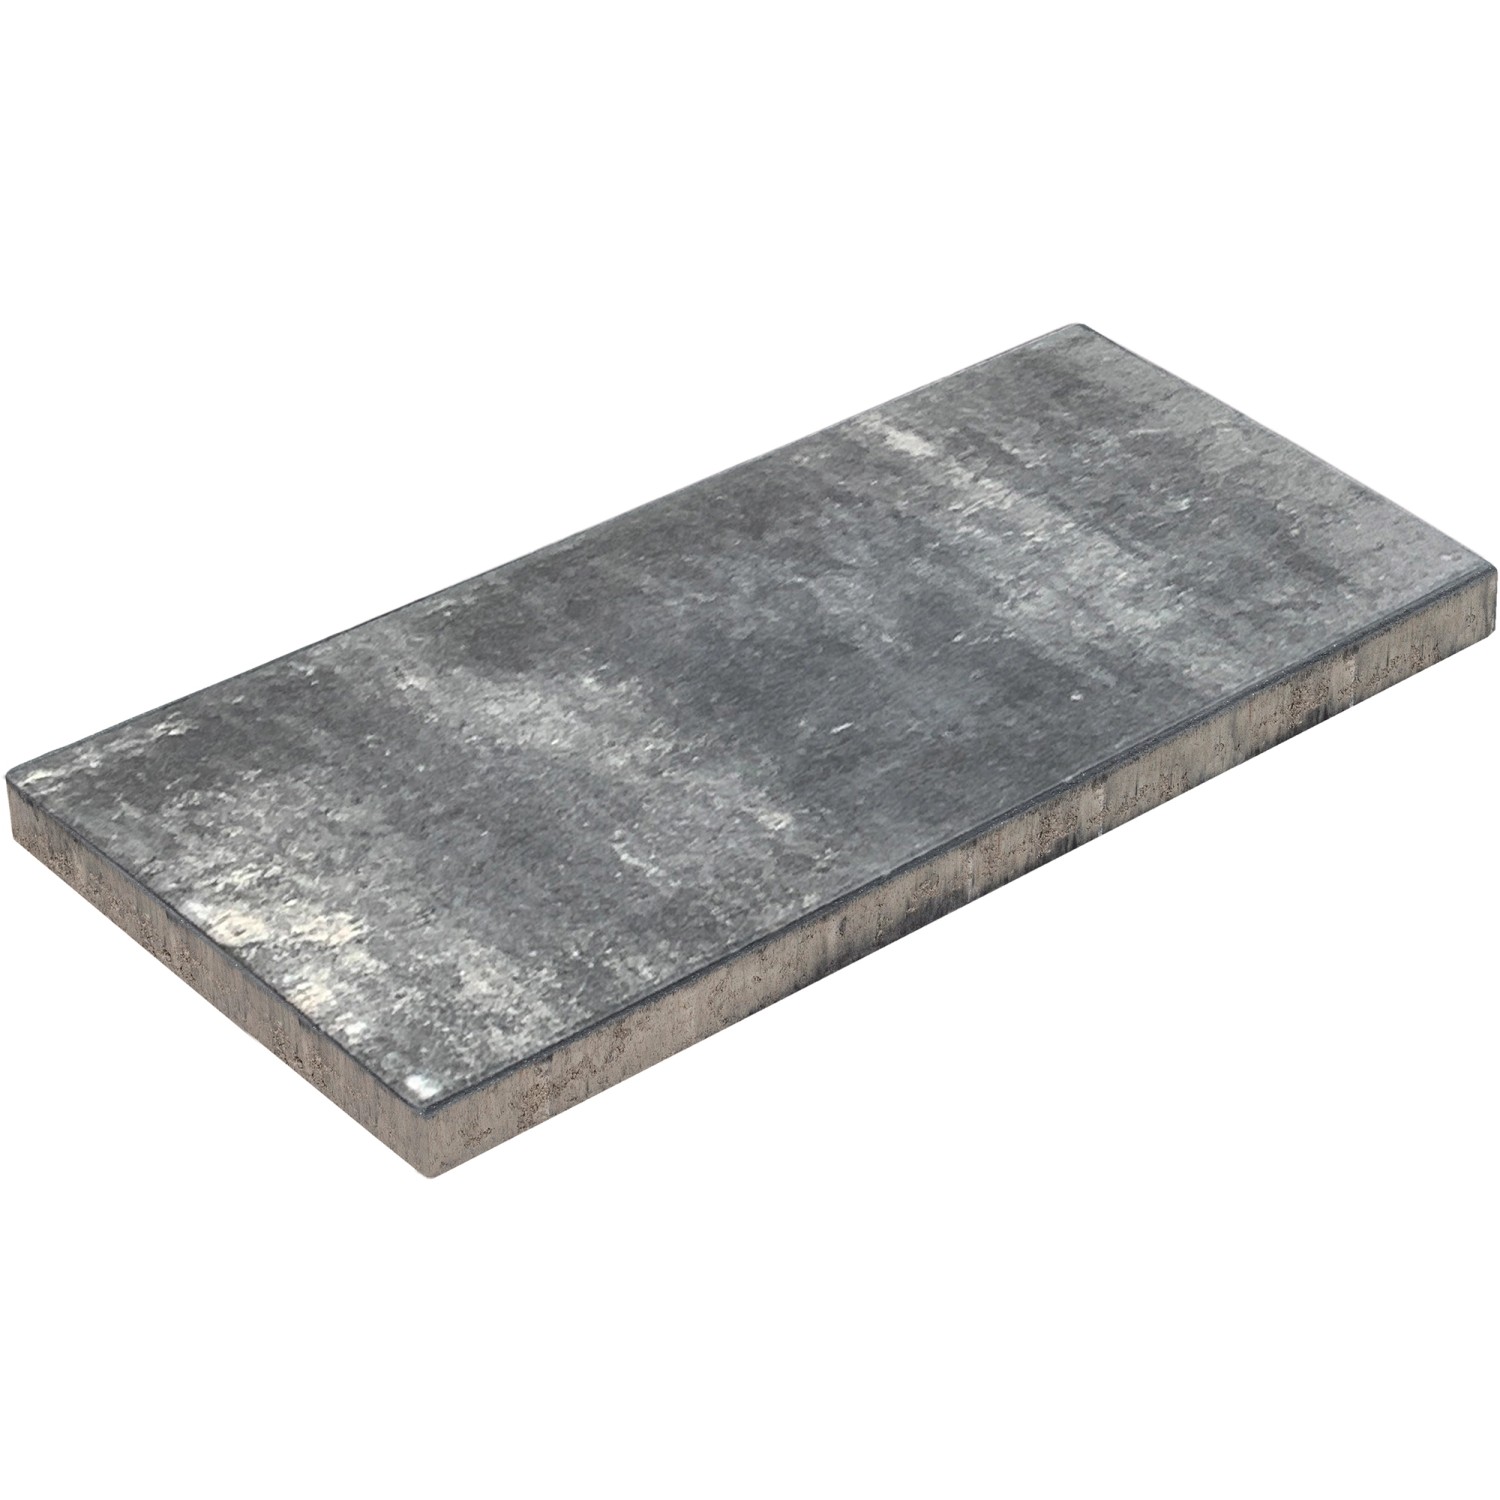 Diephaus Terrassenplatte Daras Graphit 60 cm x 40 cm x 4 cm